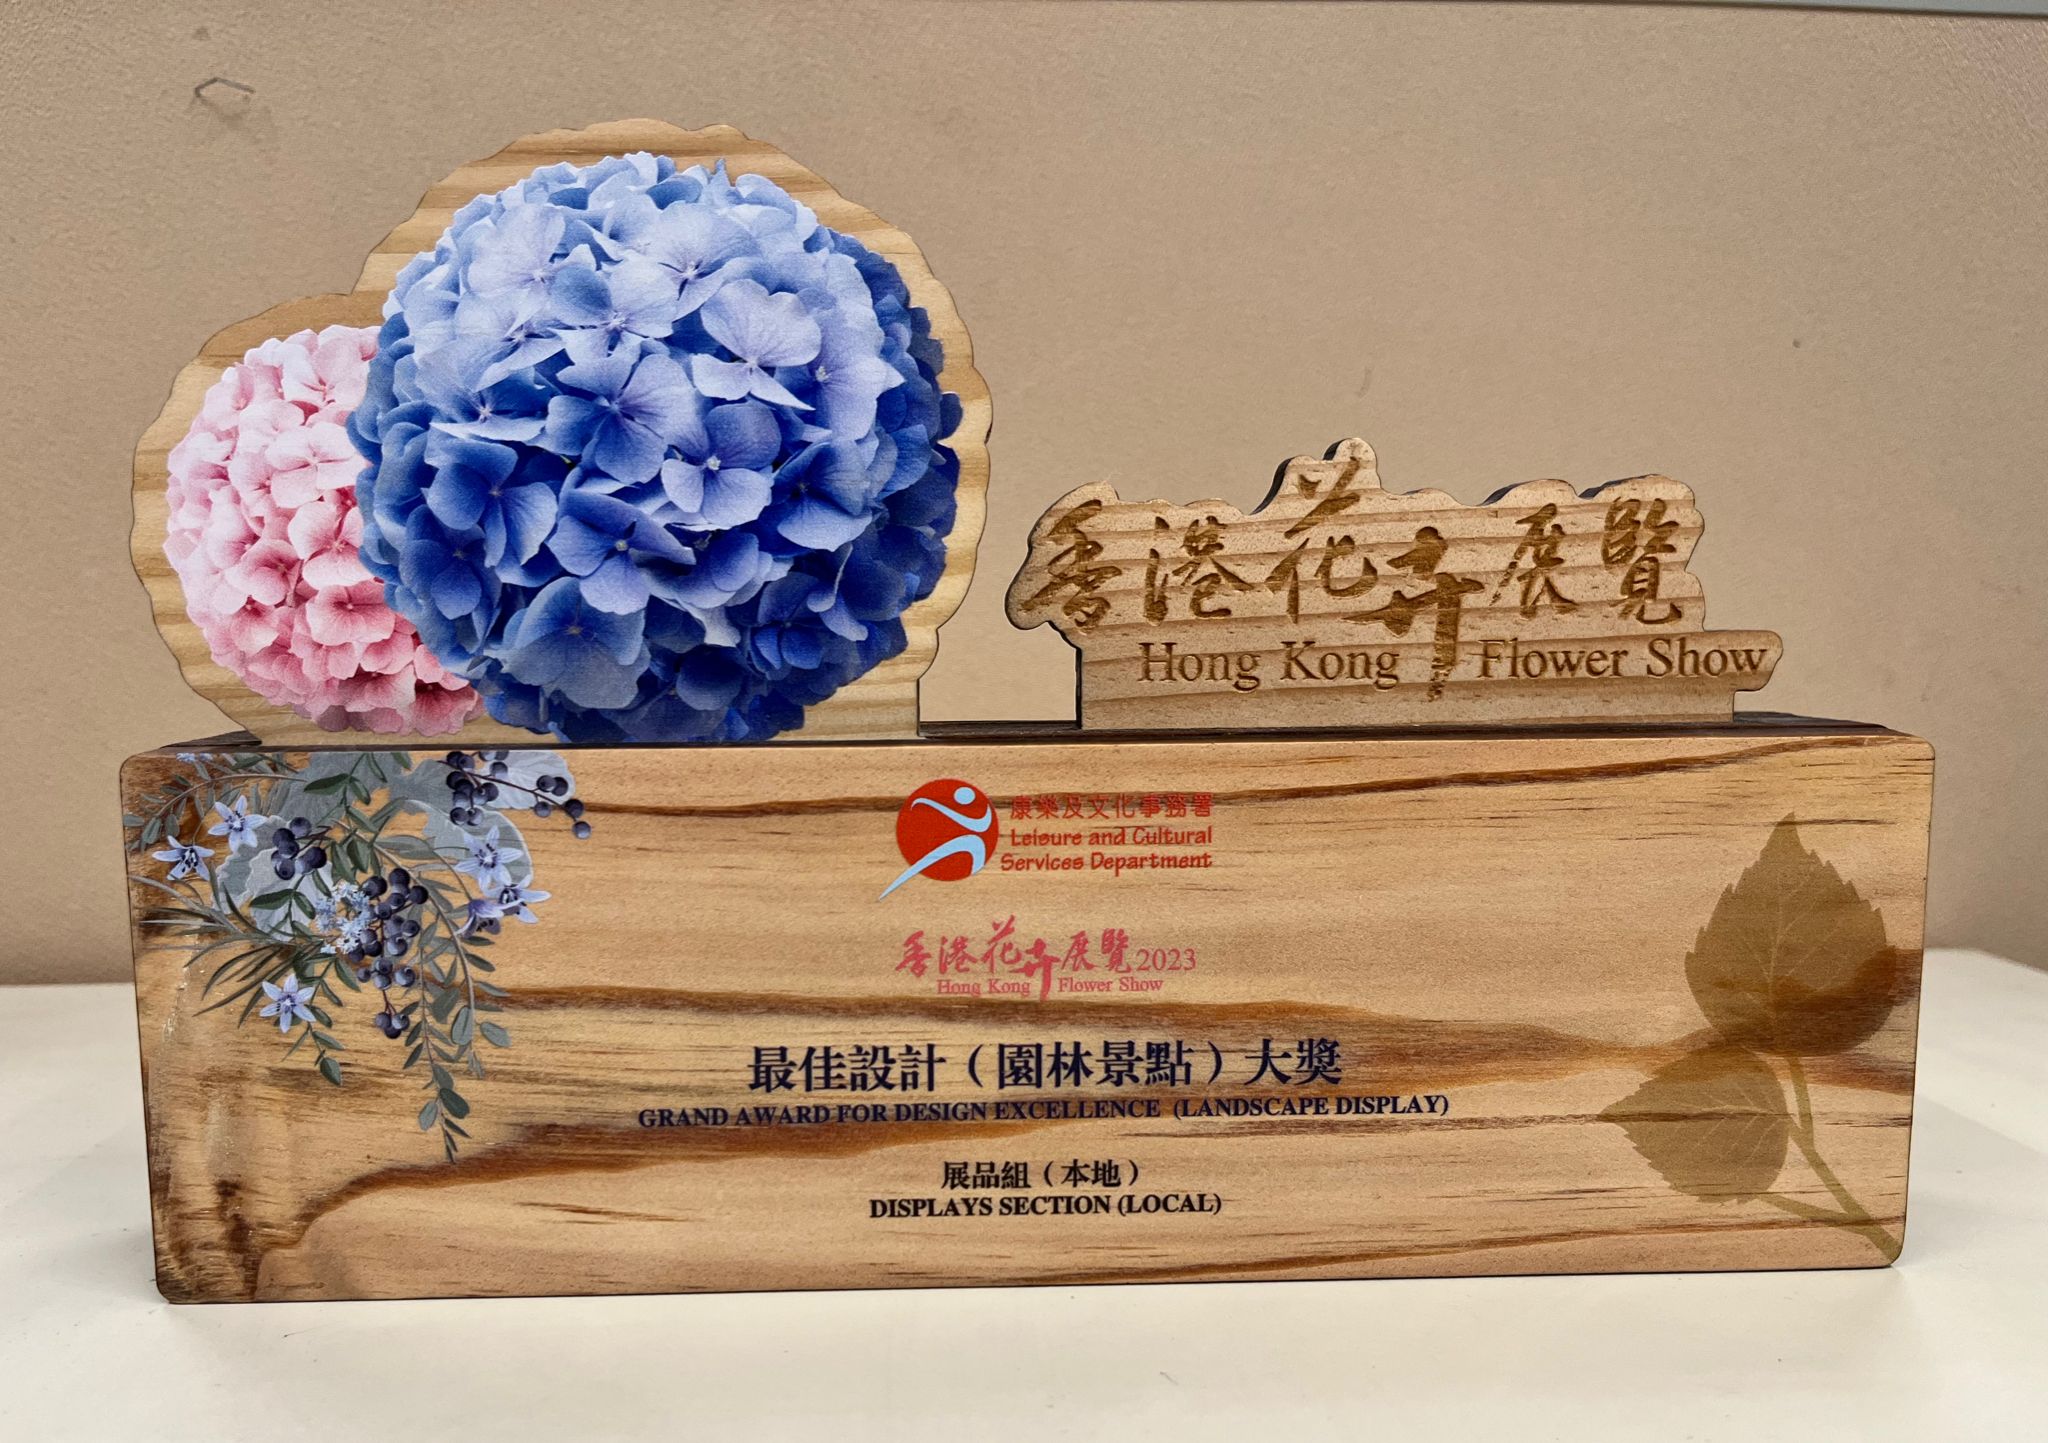 二零二三年香港花卉展覽
園林景點 - 最佳設計大獎 (本地展品組)